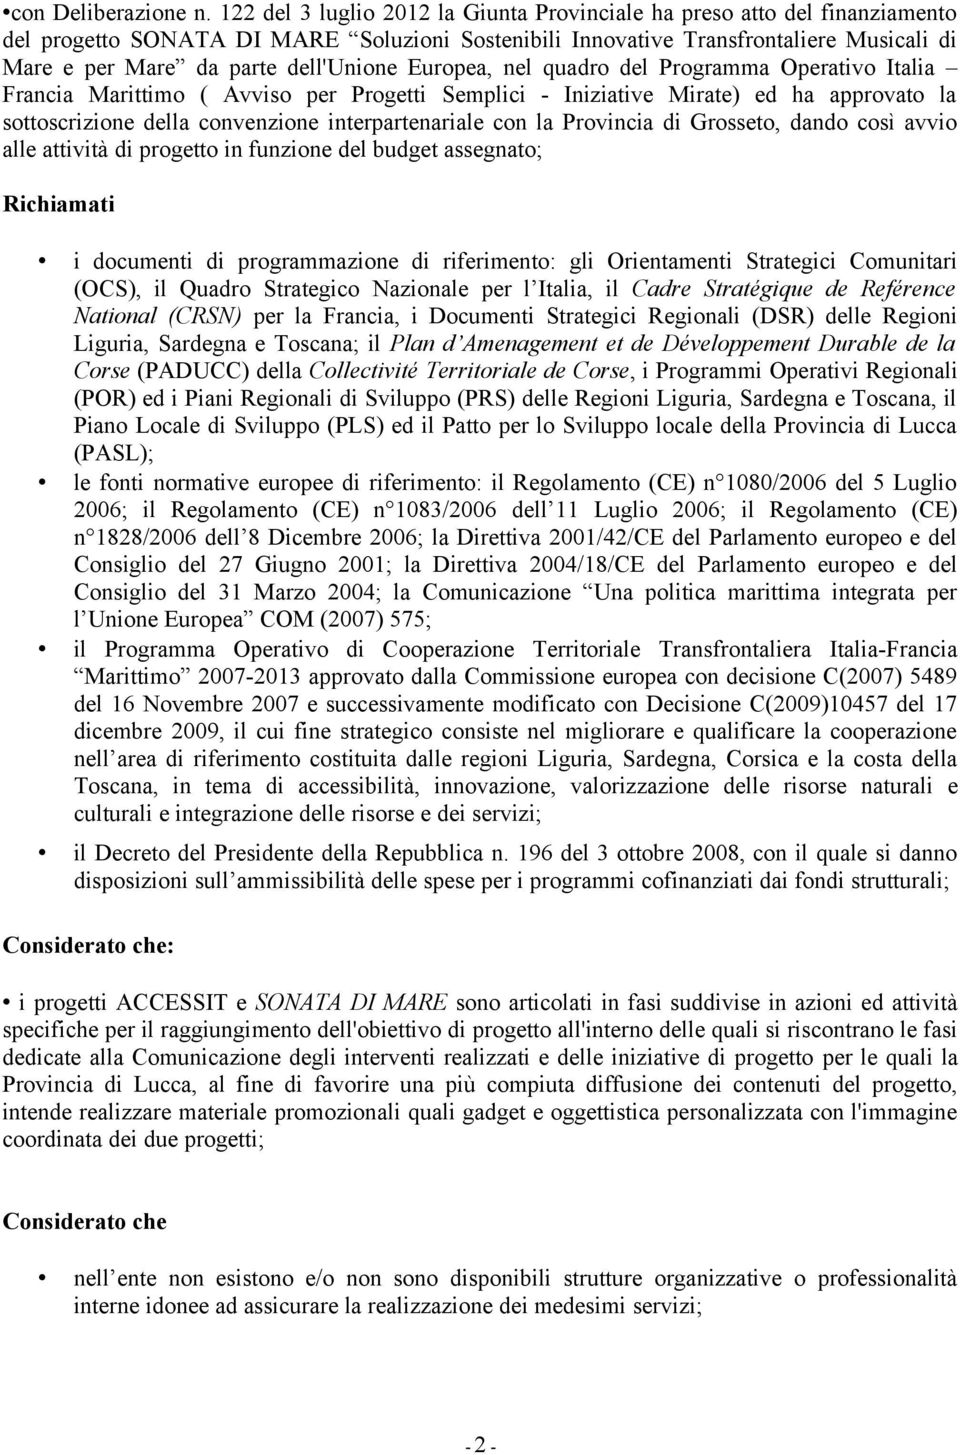 dell'unione Europea, nel quadro del Programma Operativo Italia Francia Marittimo ( Avviso per Progetti Semplici - Iniziative Mirate) ed ha approvato la sottoscrizione della convenzione